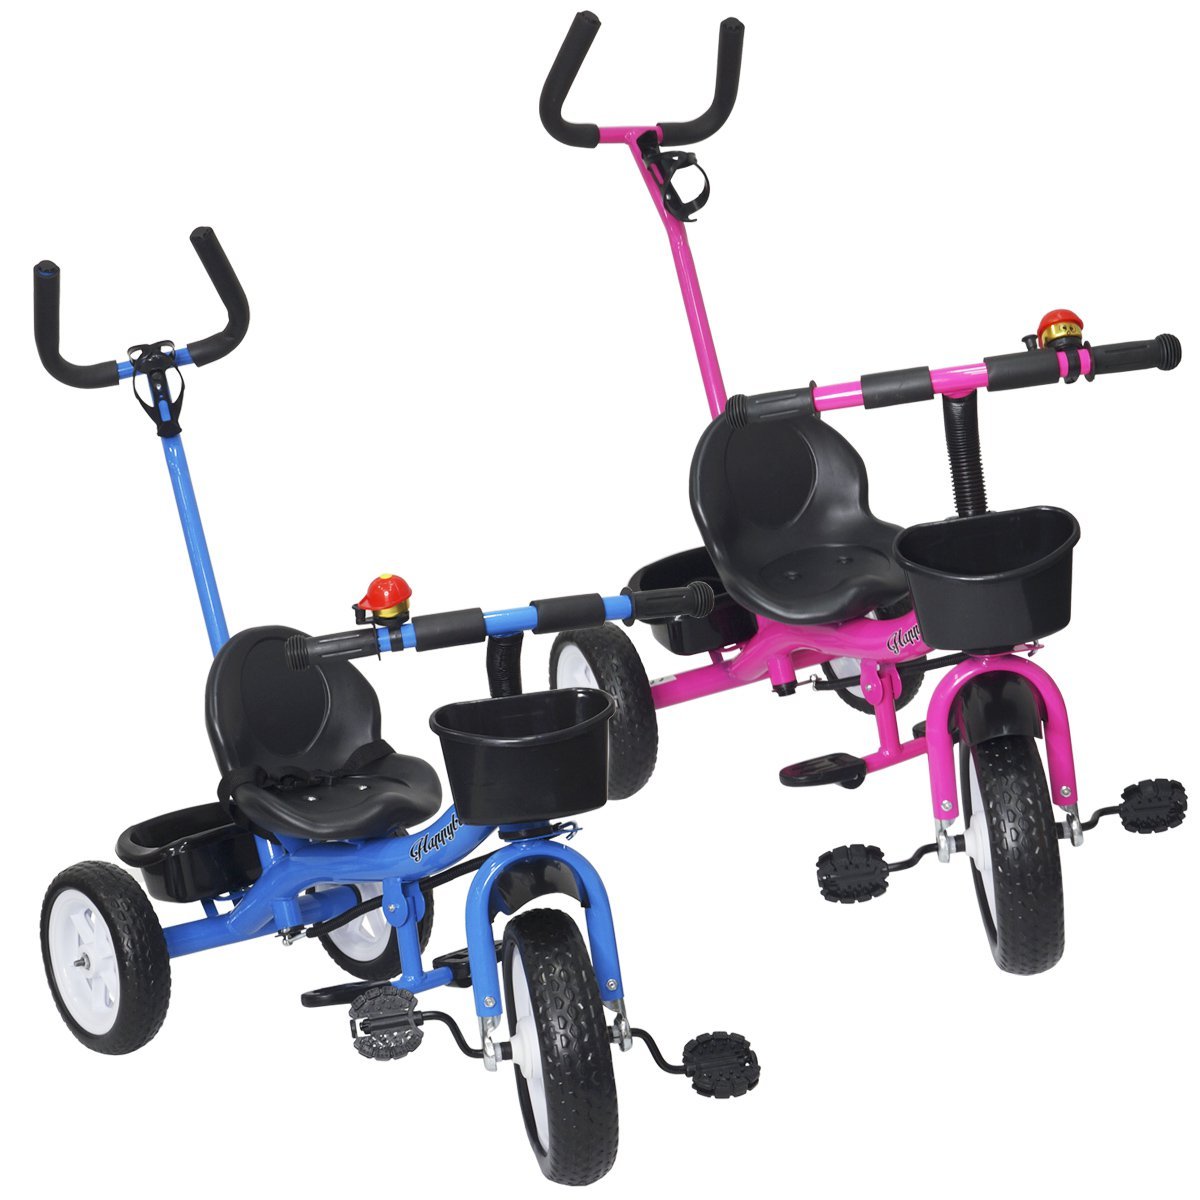 Motoca Infantil Triciclo Com Som E Pedais Velotrol Empurrar